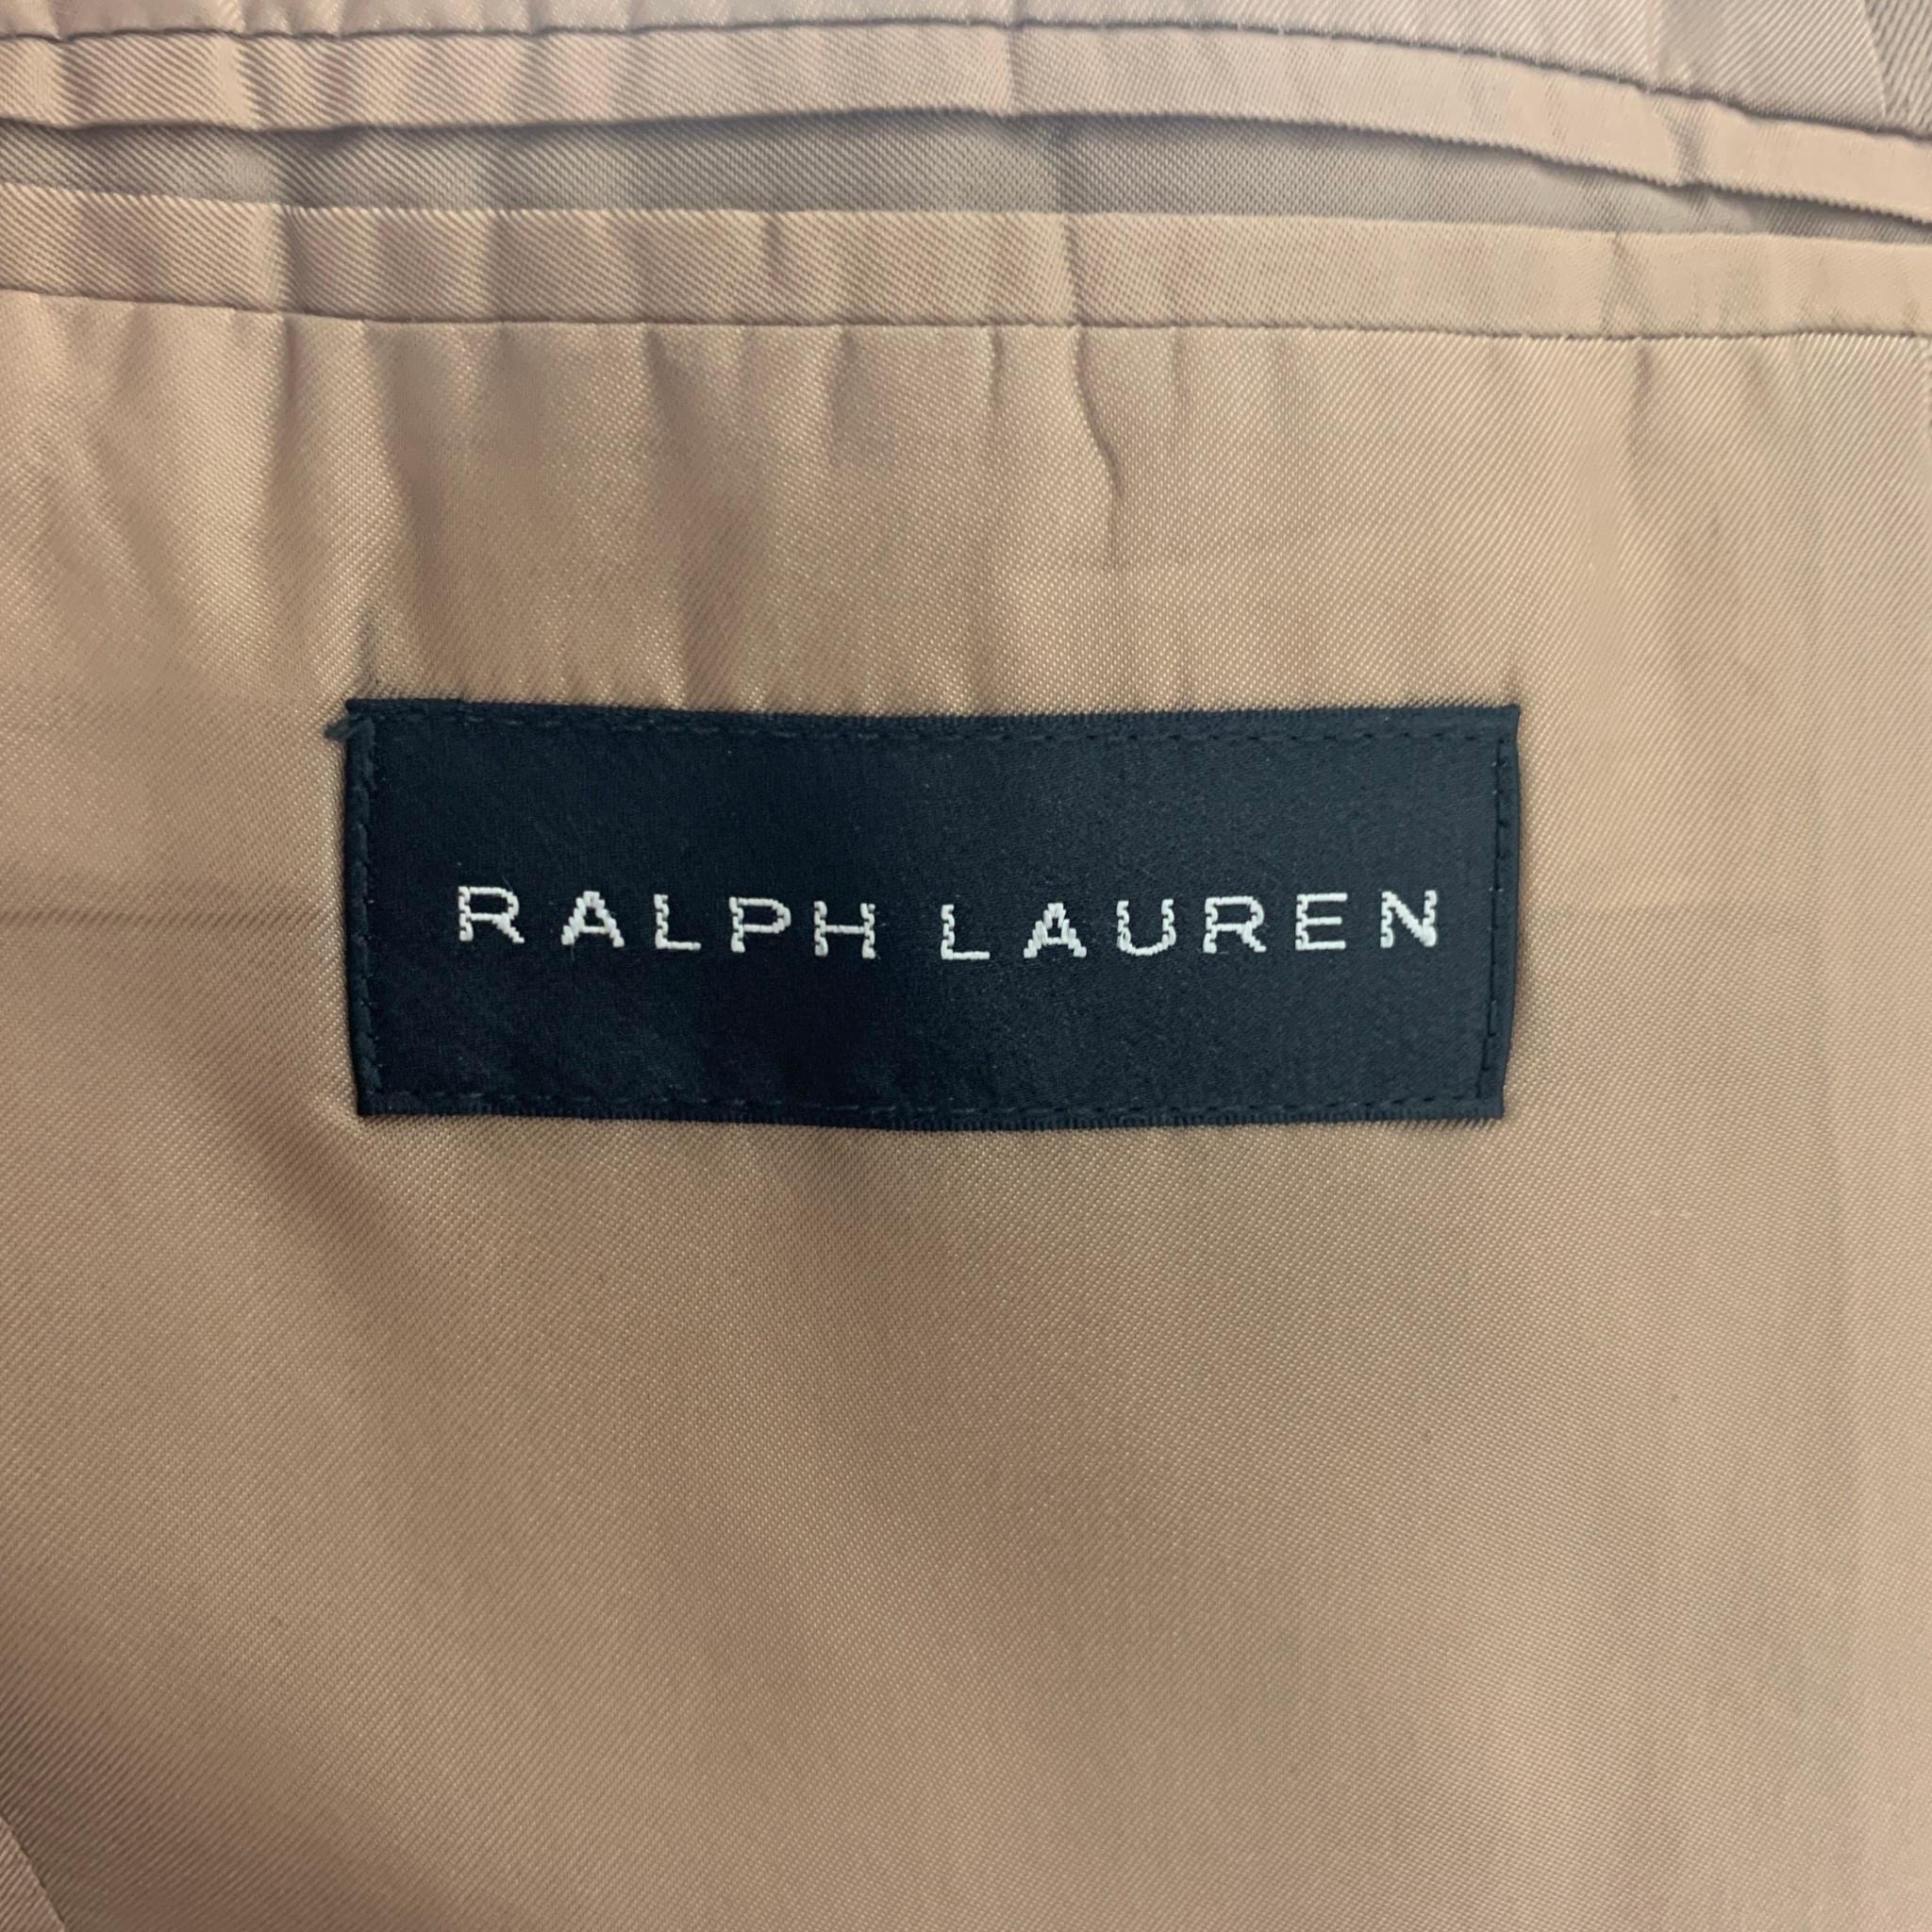 RALPH LAUREN Black Label Size 38 Khaki Wool Notch Lapel Suit 3